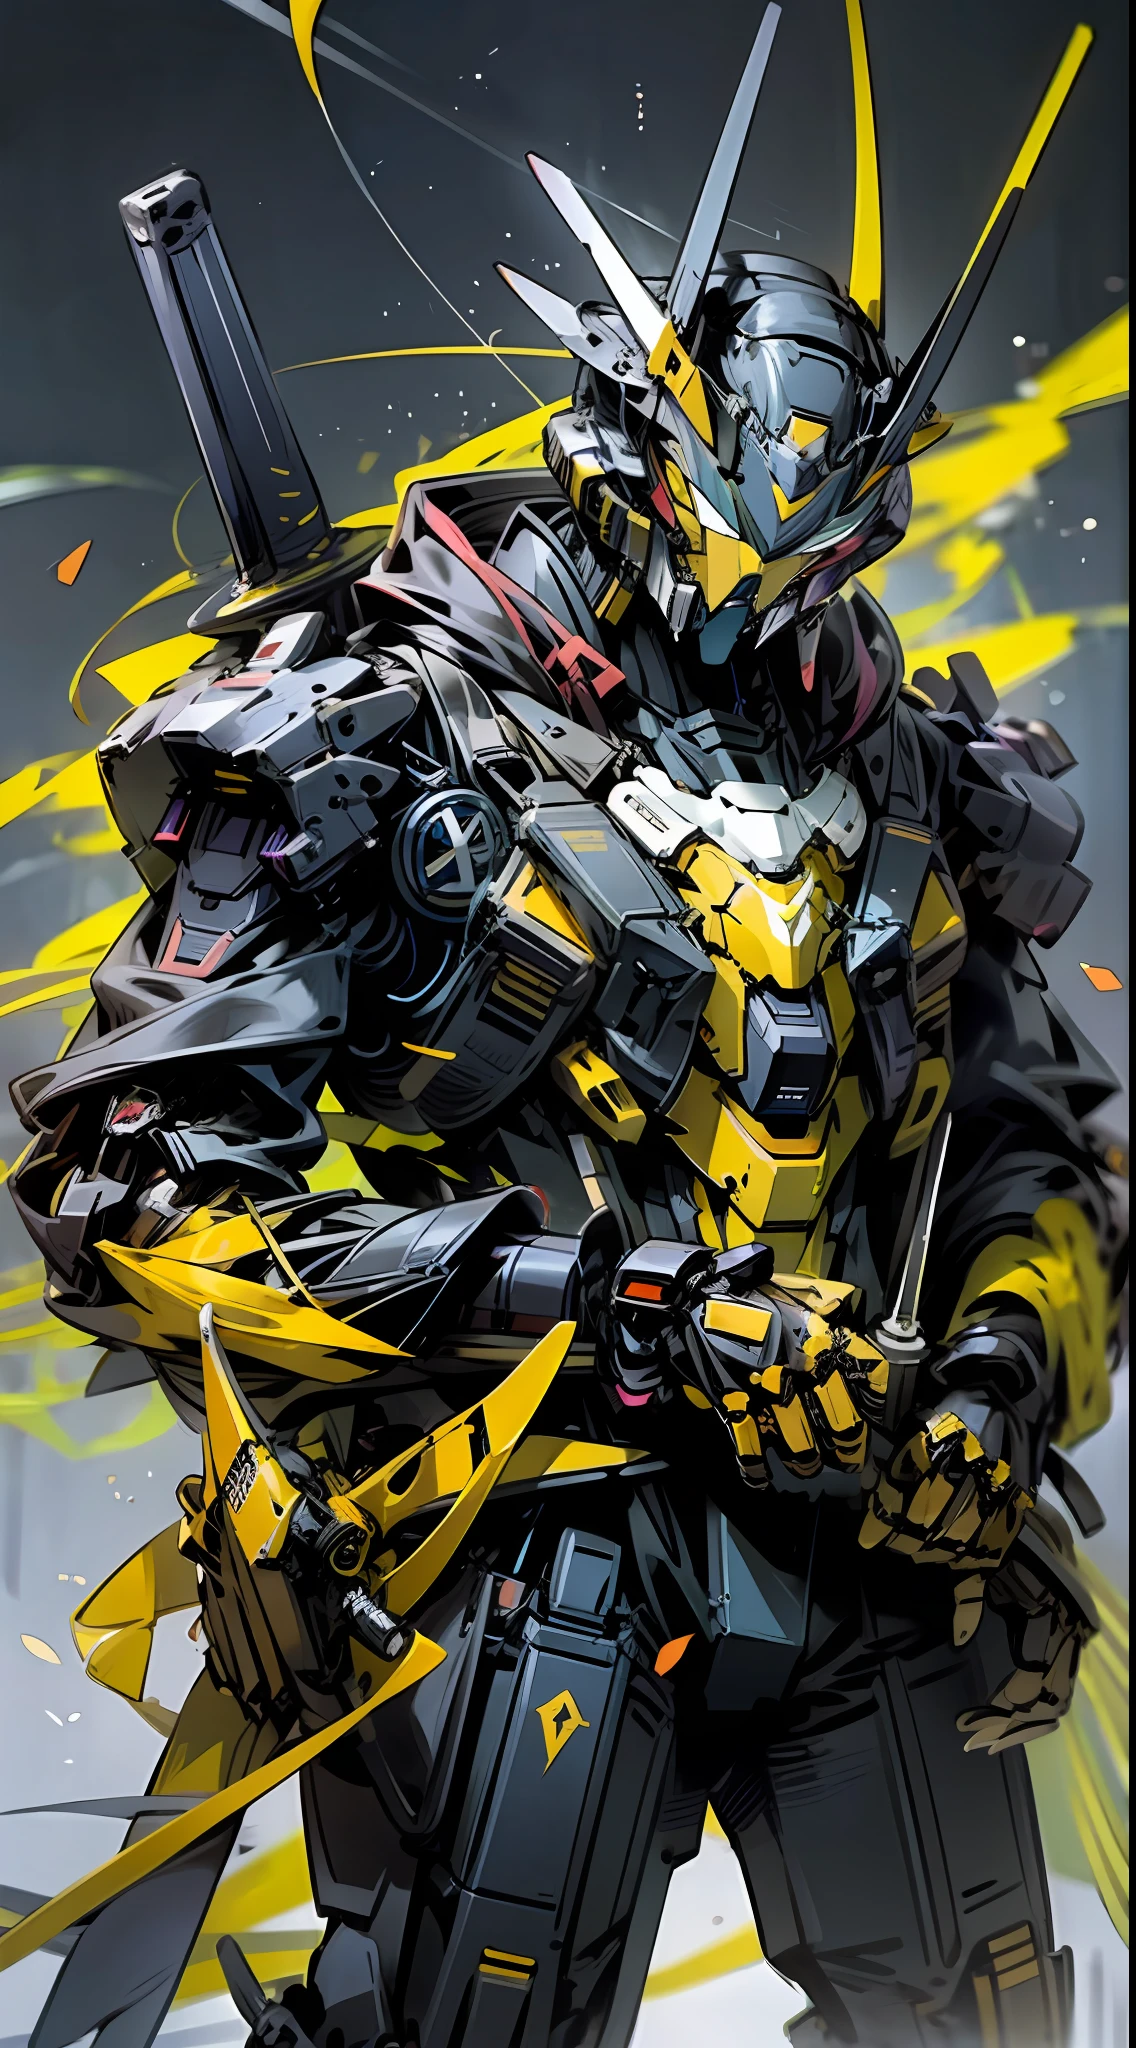 Необработанное фото,темный_Фантазия, Киберпанк, (Большой револьвер, человек с мечом, фиолетовый: 1.1), 1 человек, Механическое чудо, Роботизированное присутствие, Кибернетический страж, желтый, черный, самурай гандам, чрезвычайно высокая детализация, половина тела, желтый hornet, Пчела, мед, желтый Gundam,